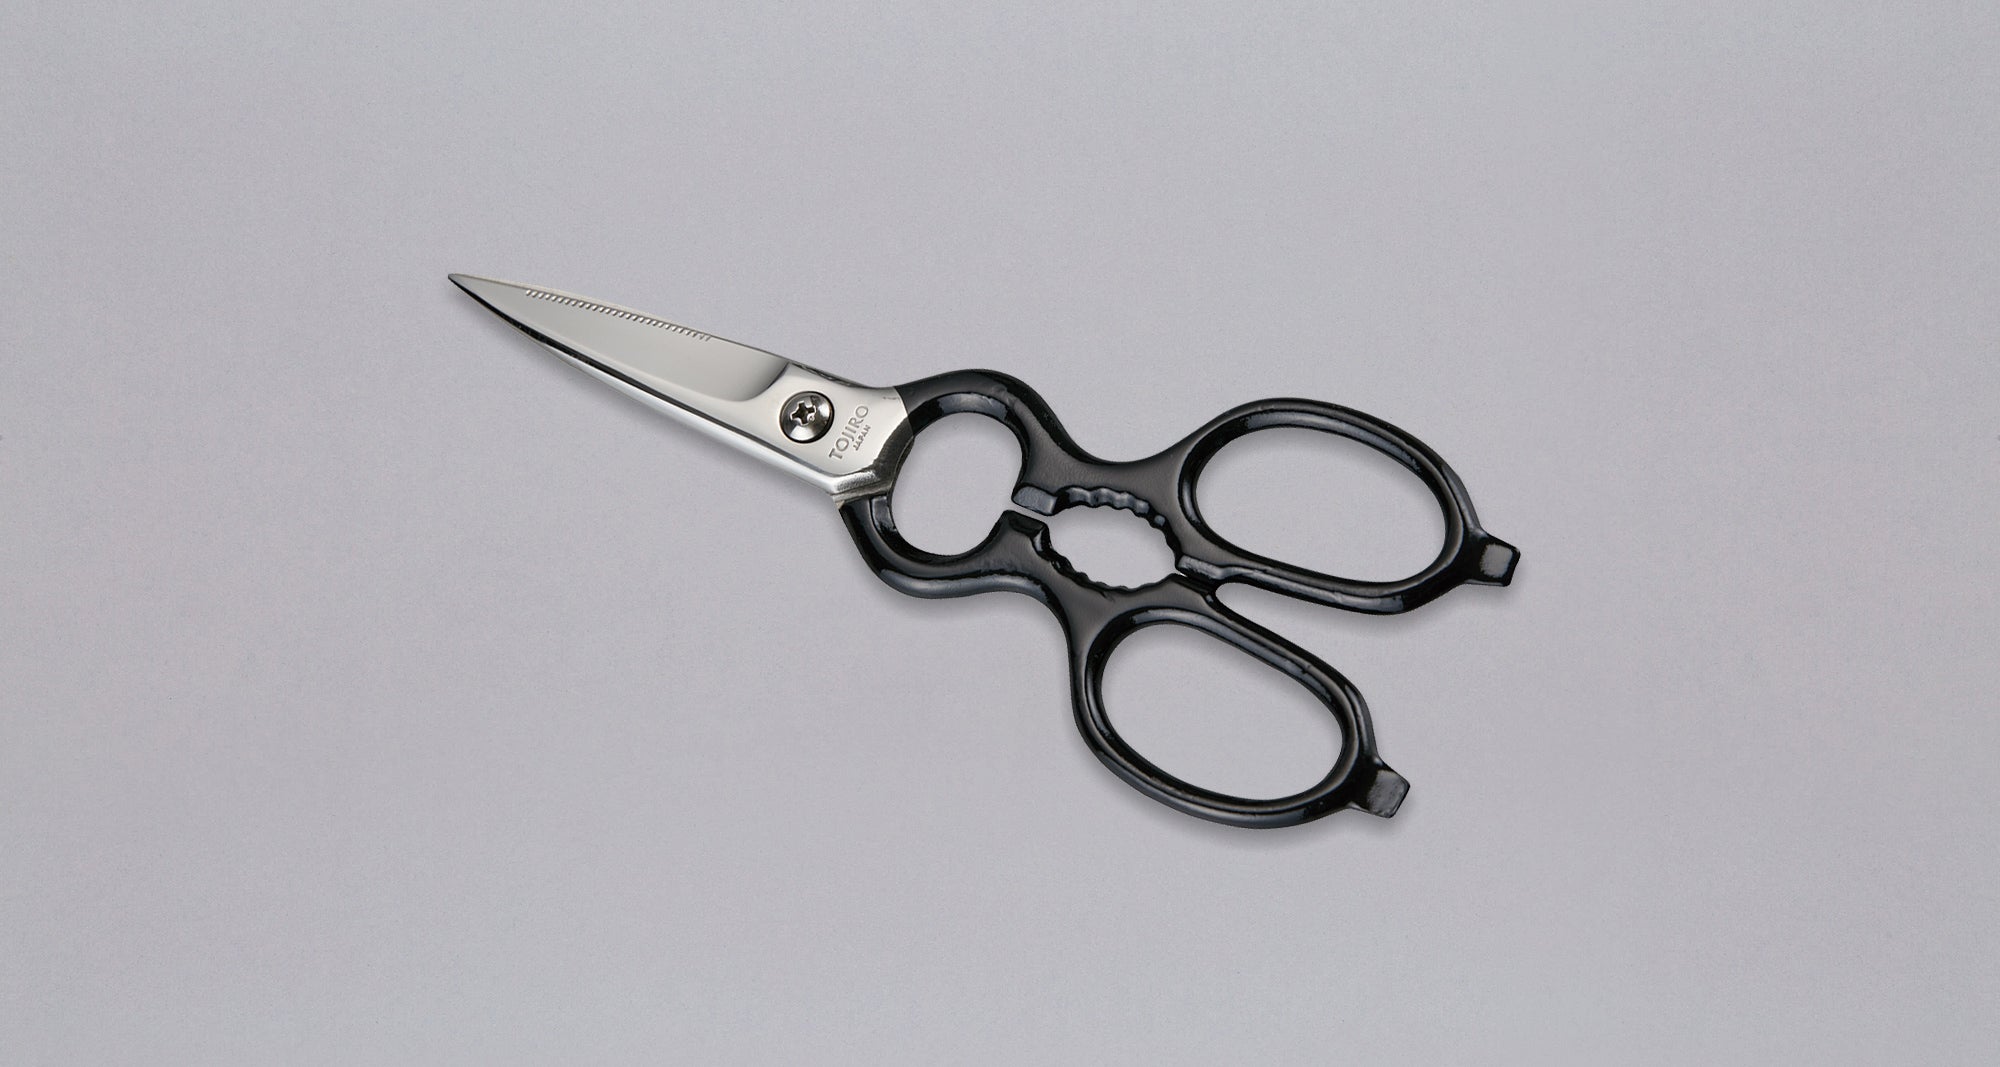 Small scissors BLACK - 40mm (1.6